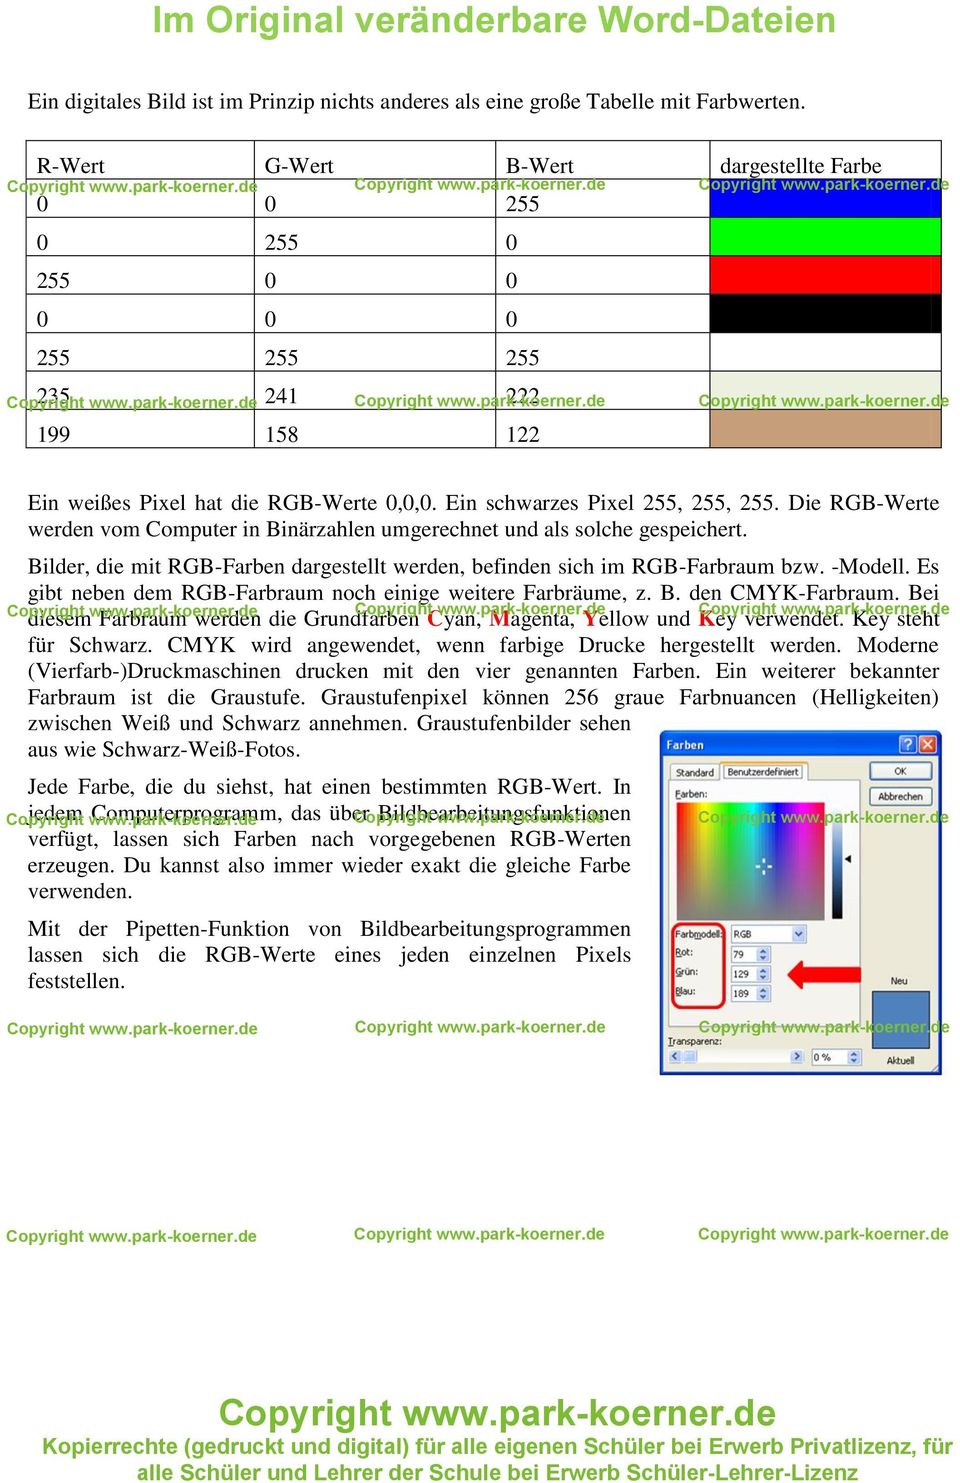 Die RGB-Werte werden vom Computer in Binärzahlen umgerechnet und als solche gespeichert. Bilder, die mit RGB-Farben dargestellt werden, befinden sich im RGB-Farbraum bzw. -Modell.